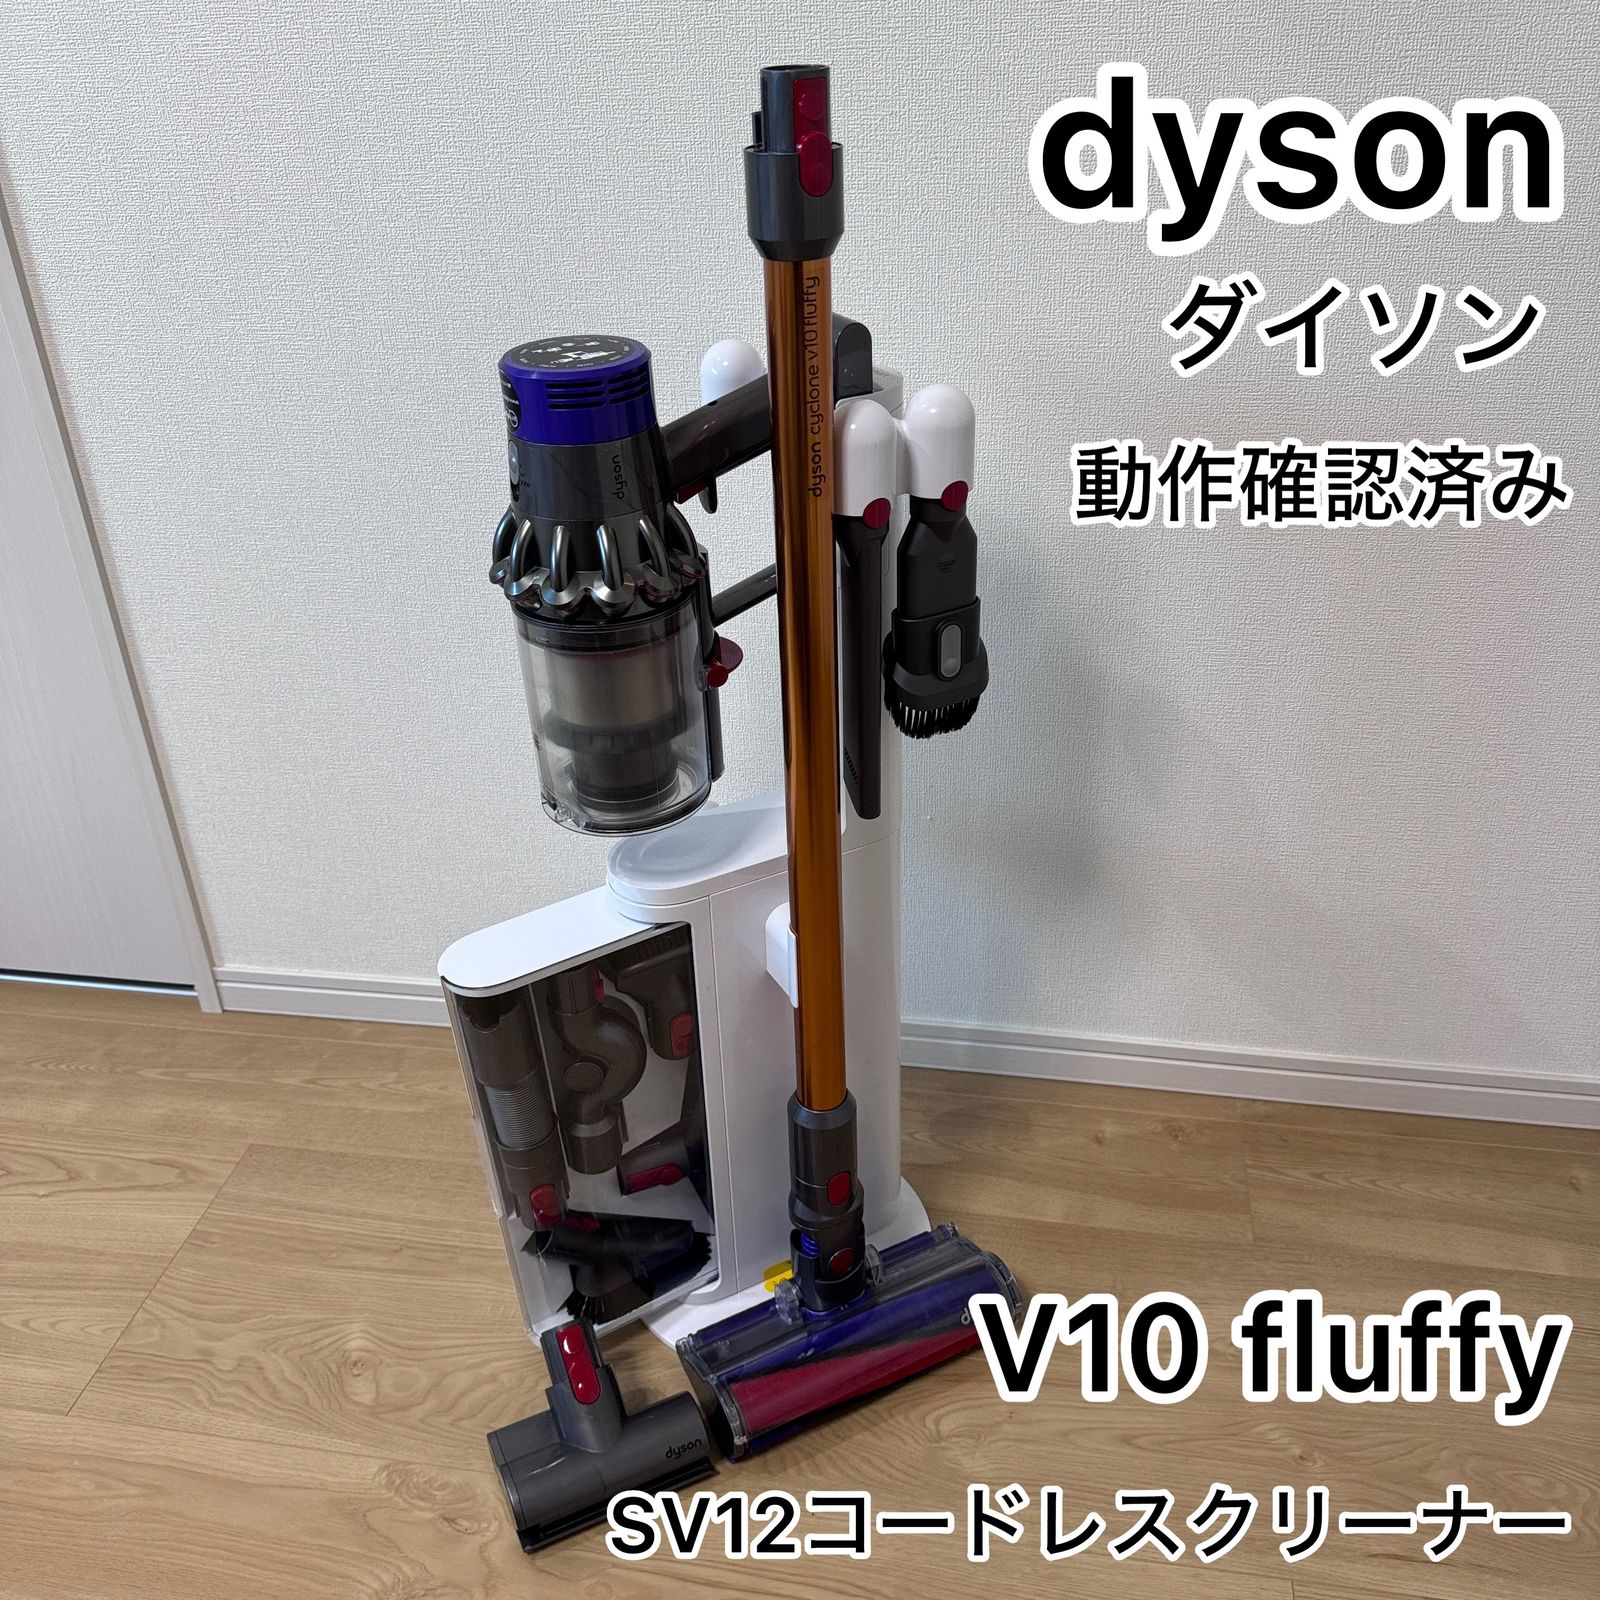 お買い得得価dyson syclone v10 fluffy sv12(※注意事項あり) 掃除機・クリーナー